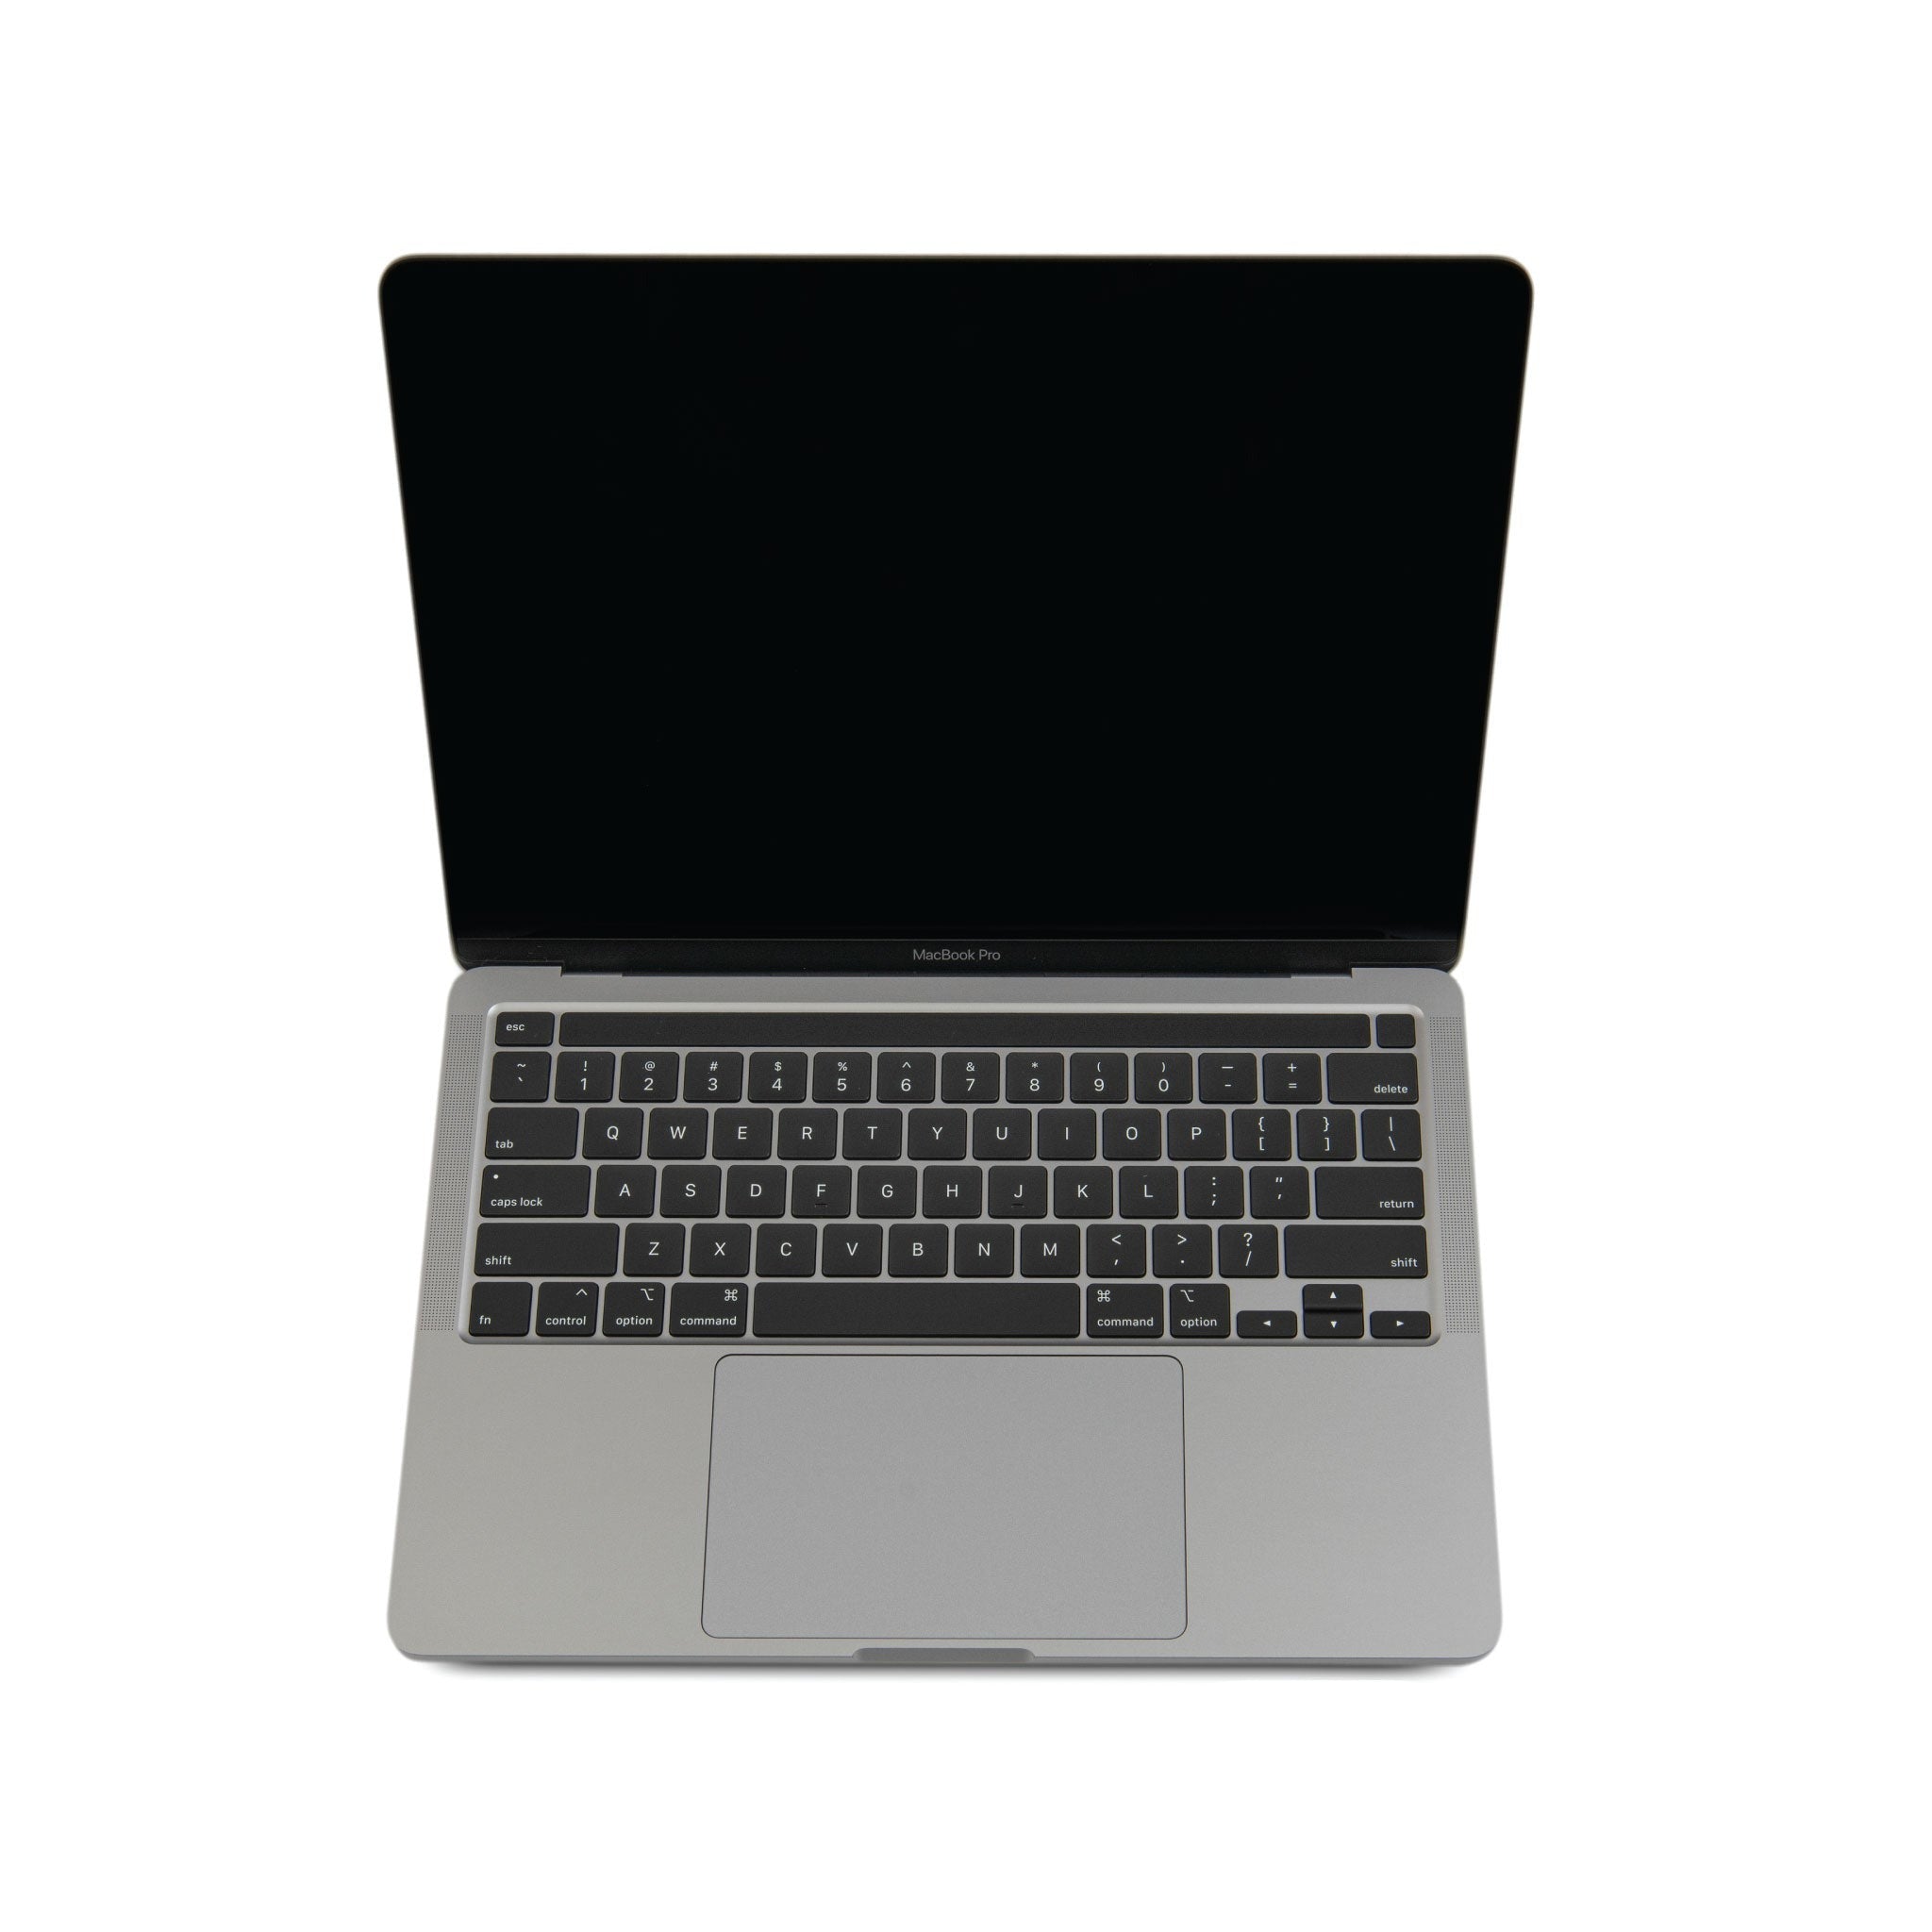 MacBook Pro 2020 | 13 inches | Intel Core i7 2.3 GHz Processor | 16GB